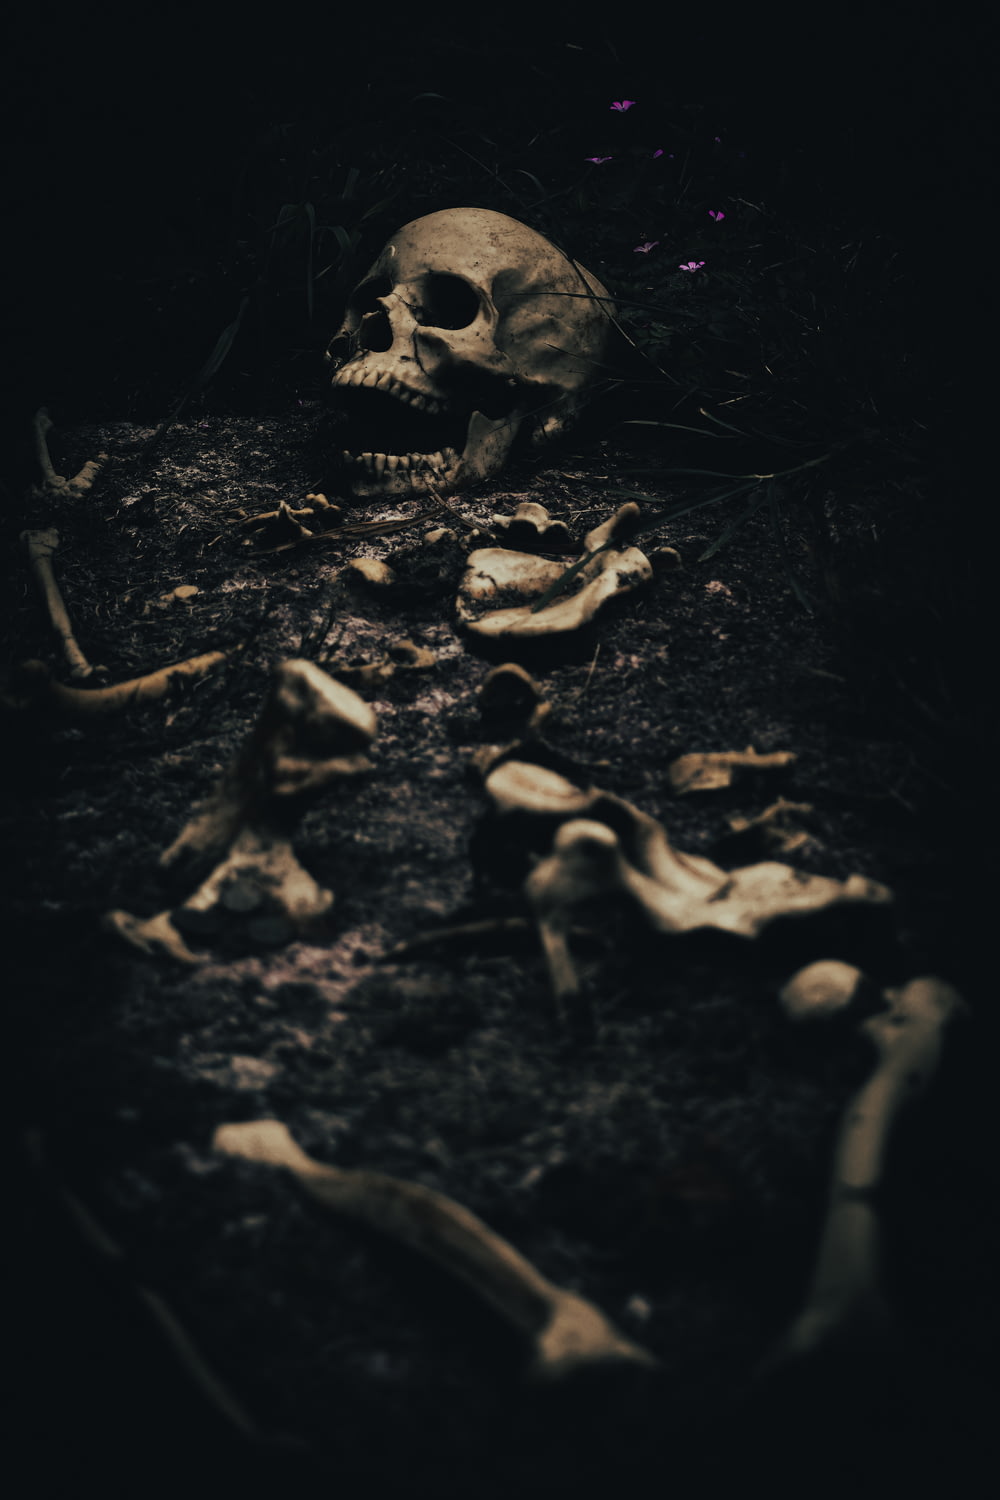 Ein menschlicher Schädel wird im Dunkeln gezeigt